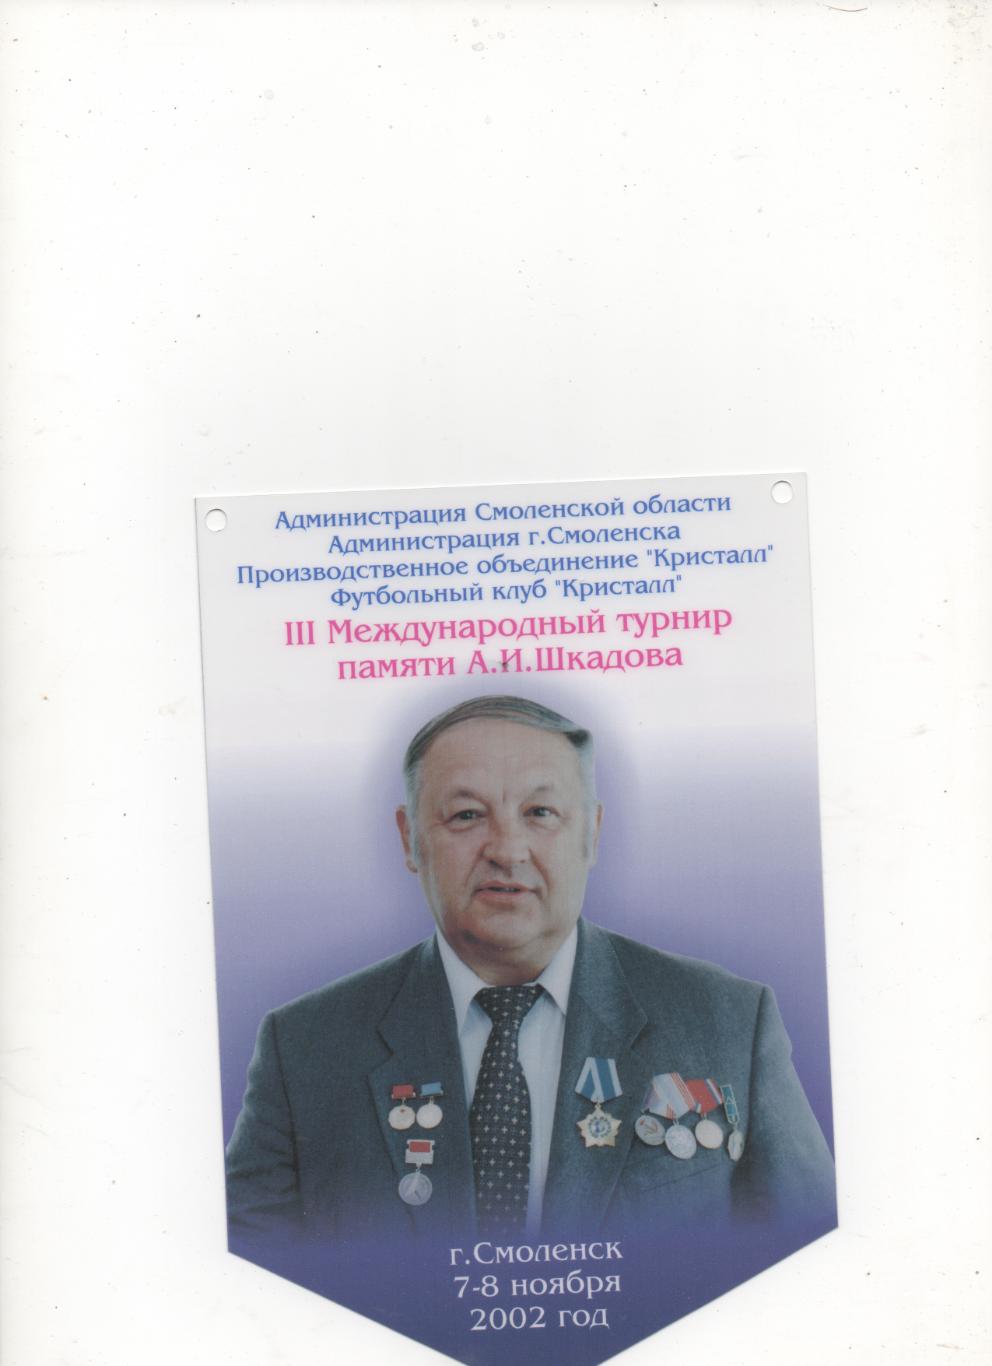 Вымпел III МТ посвящённый памяти А.И. Шкадова. Смоленск - 2002.